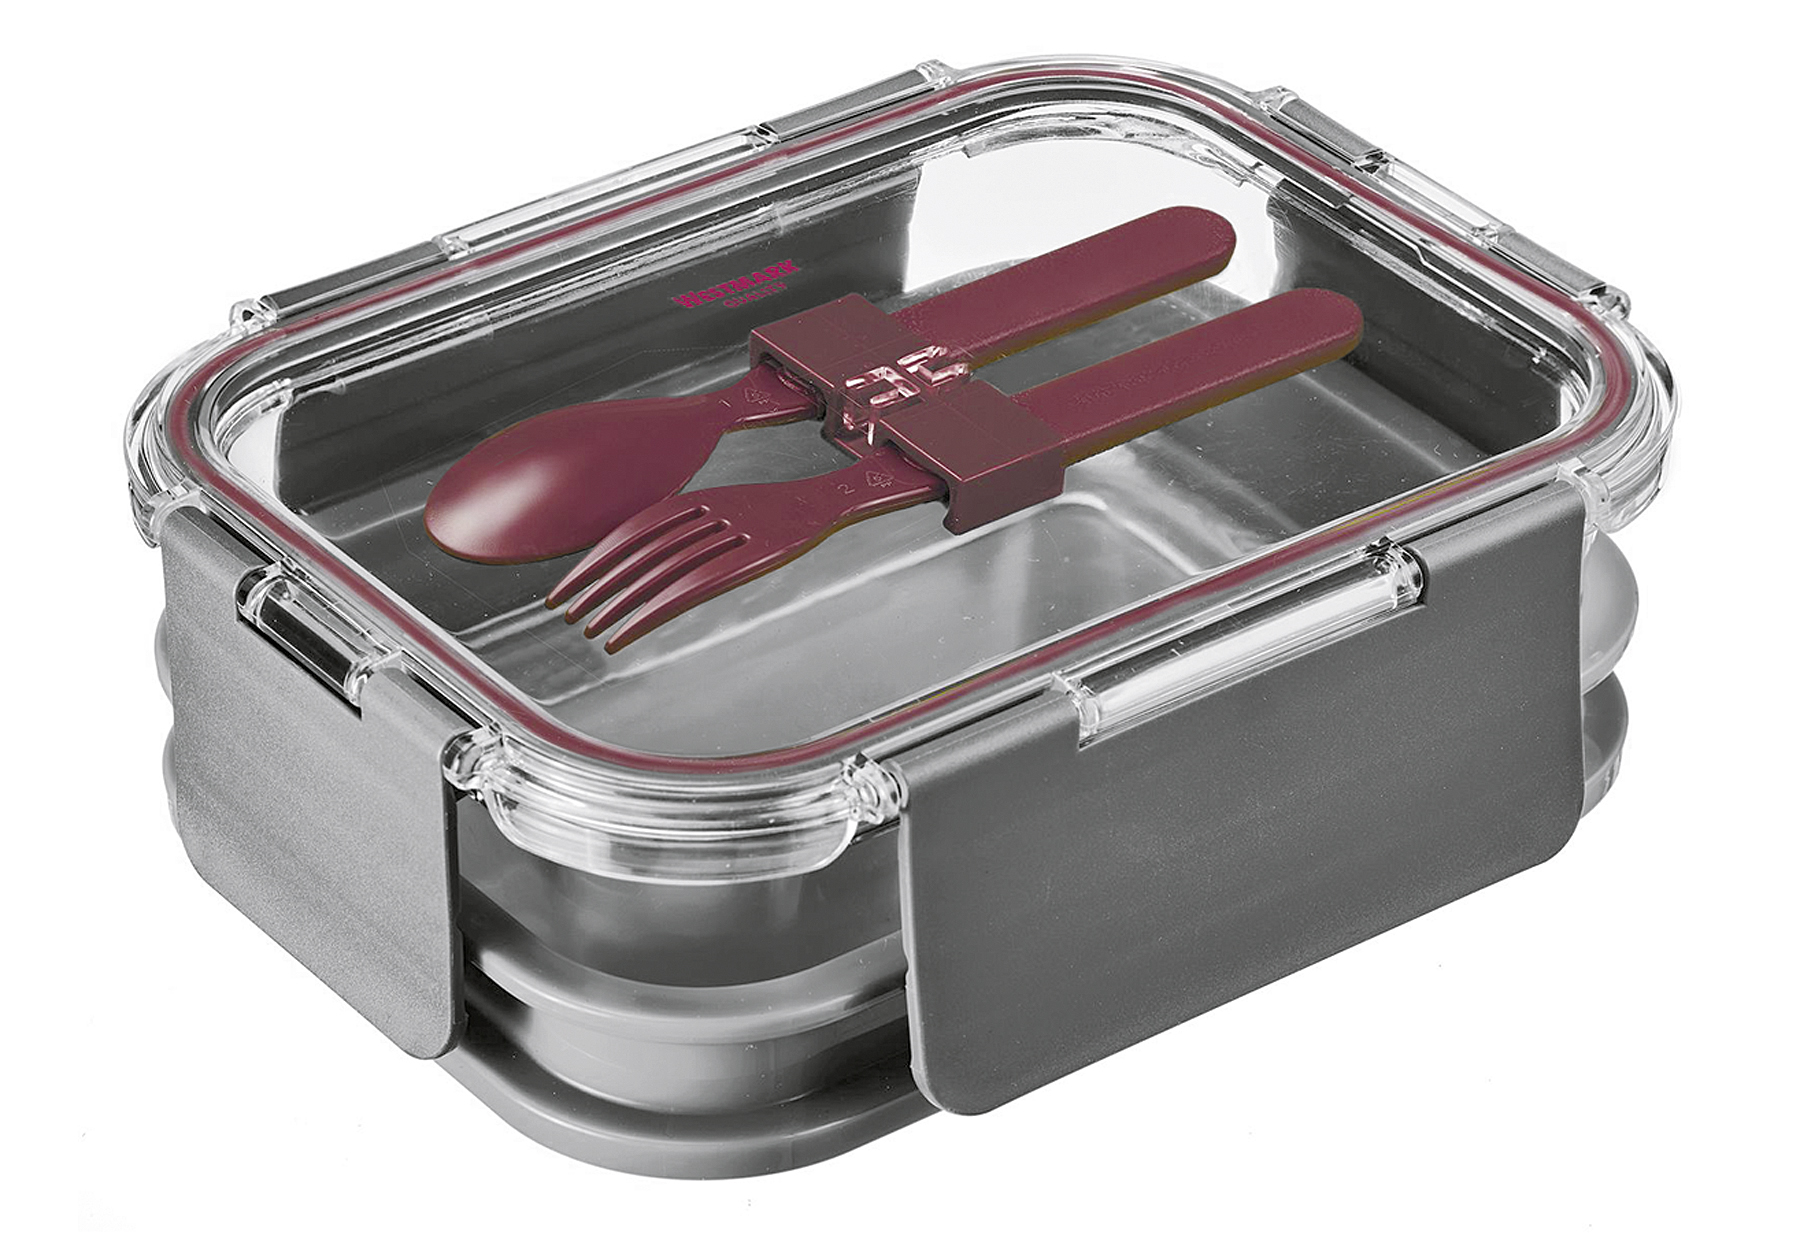 WESTMARK Lunch Box/Speisebehälter Comfort 1740ml anthrazit